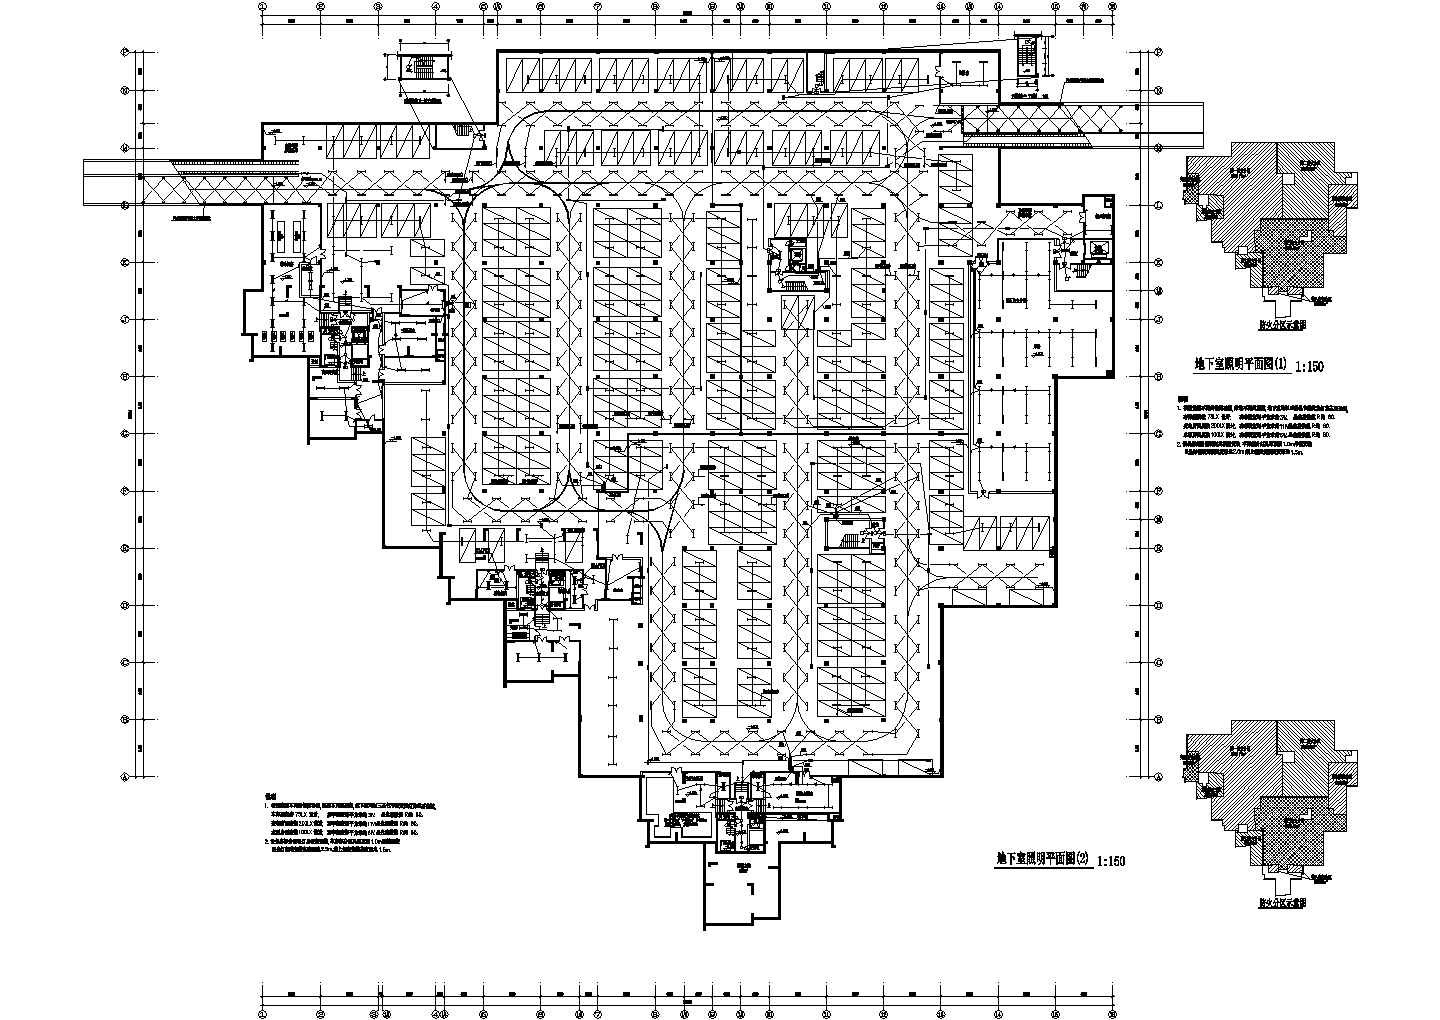 某地商场购物中心全套电气cad设计施工图纸(含制冷机房配电系统图)